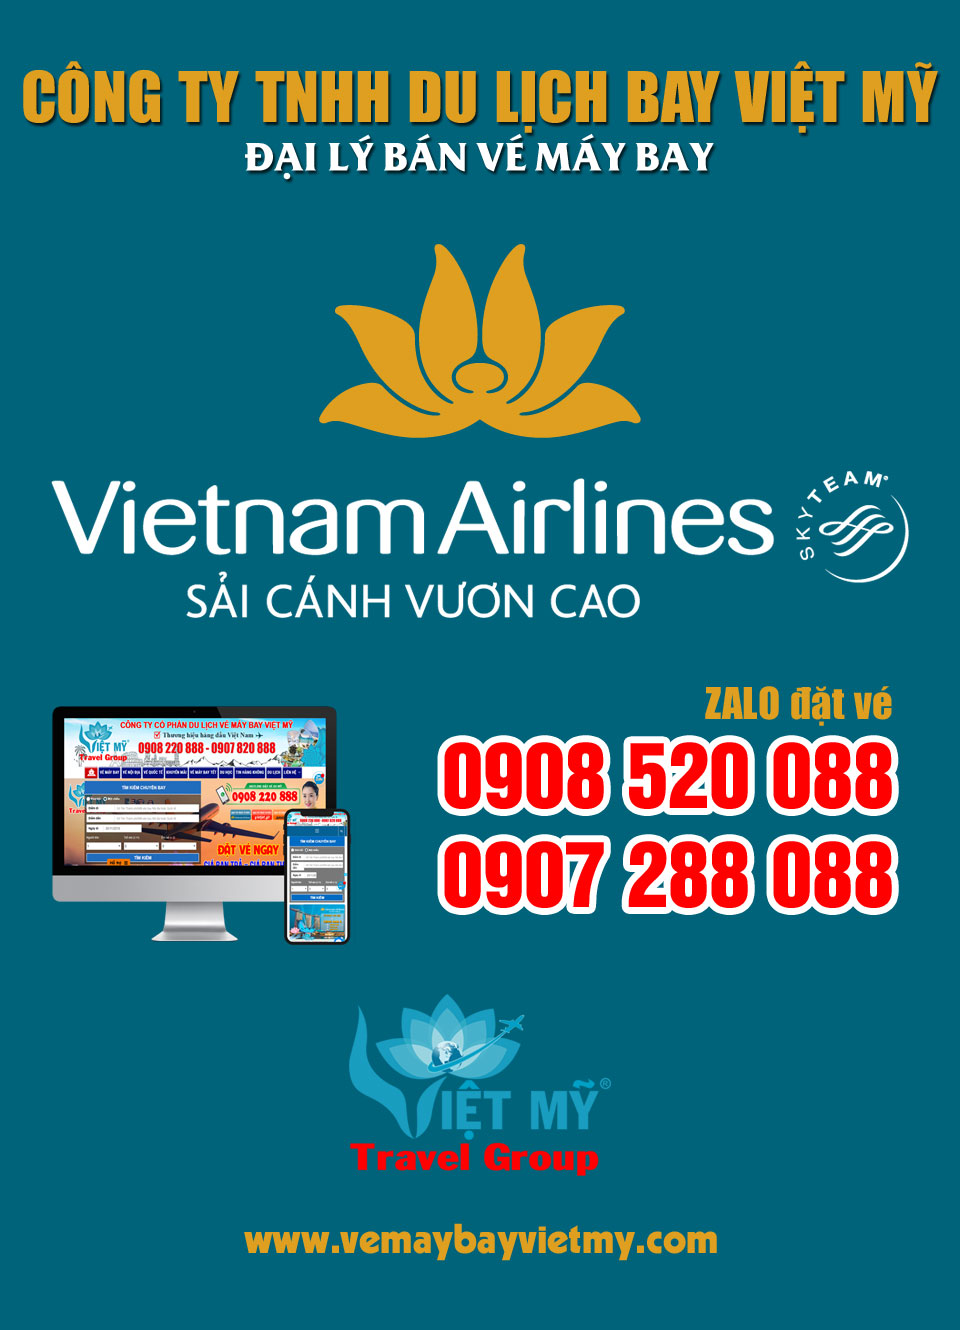 Đại lý hãng Vietnam Airlines